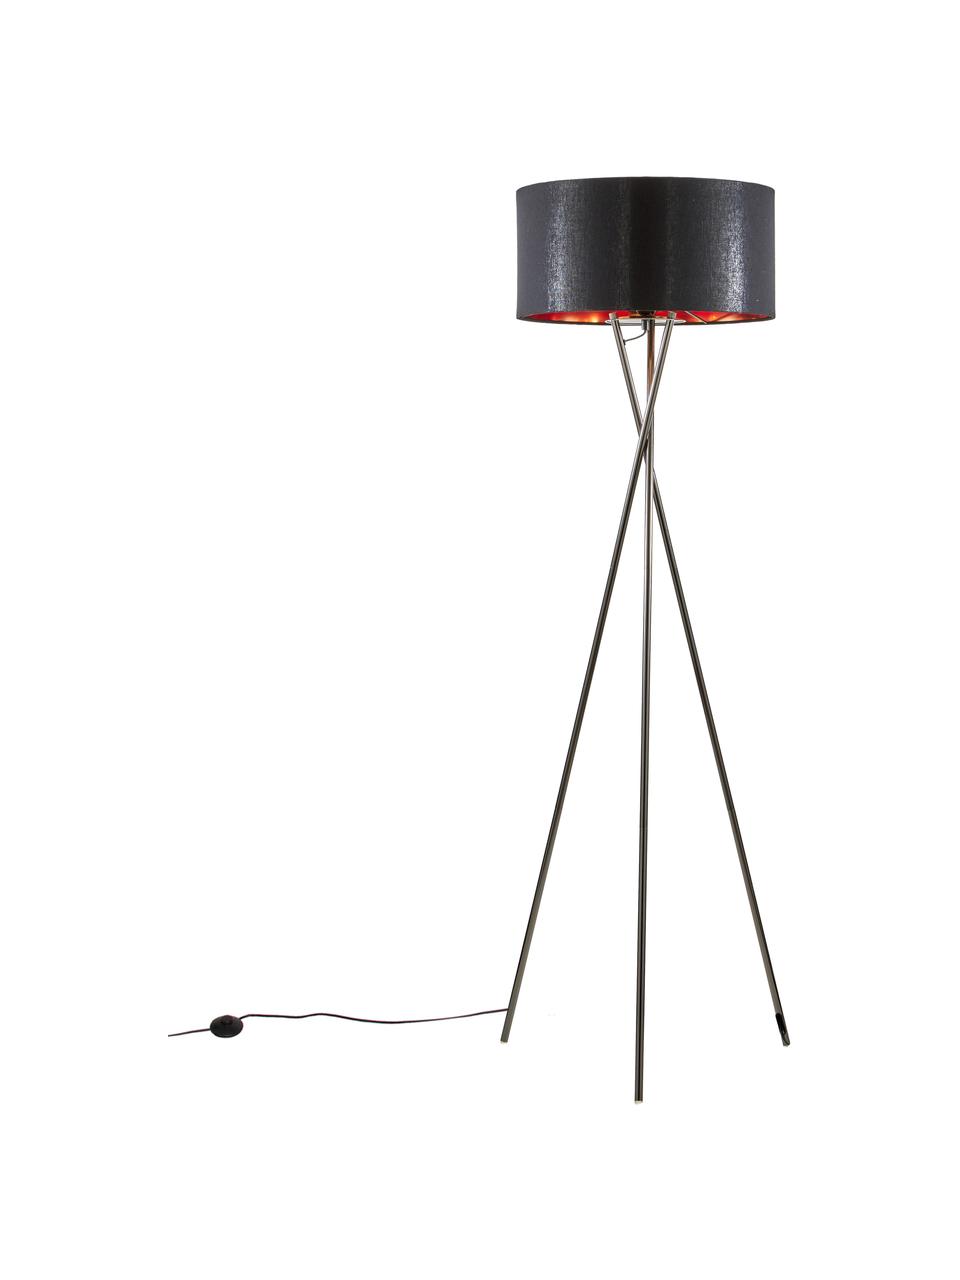 Driepoot vloerlamp Giovanna met koperen decoratie, Lampvoet: staal, zwart verchroomd, Zwart, koperkleurig, Ø 45 x H 154 cm